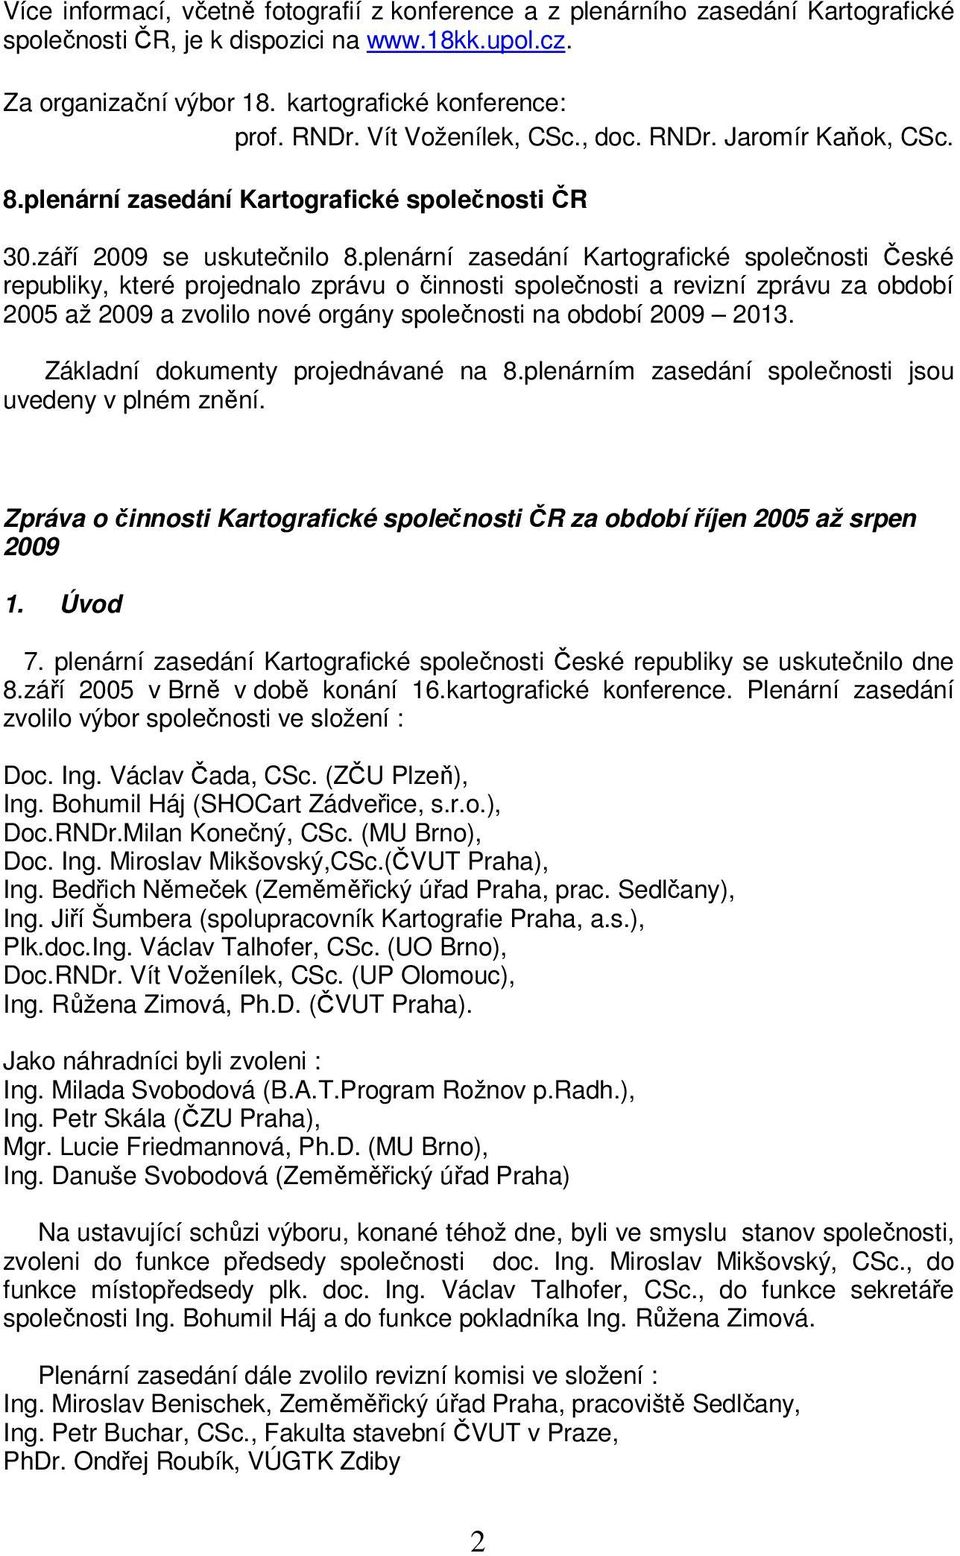 plenární zasedání Kartografické společnosti České republiky, které projednalo zprávu o činnosti společnosti a revizní zprávu za období 2005 až 2009 a zvolilo nové orgány společnosti na období 2009